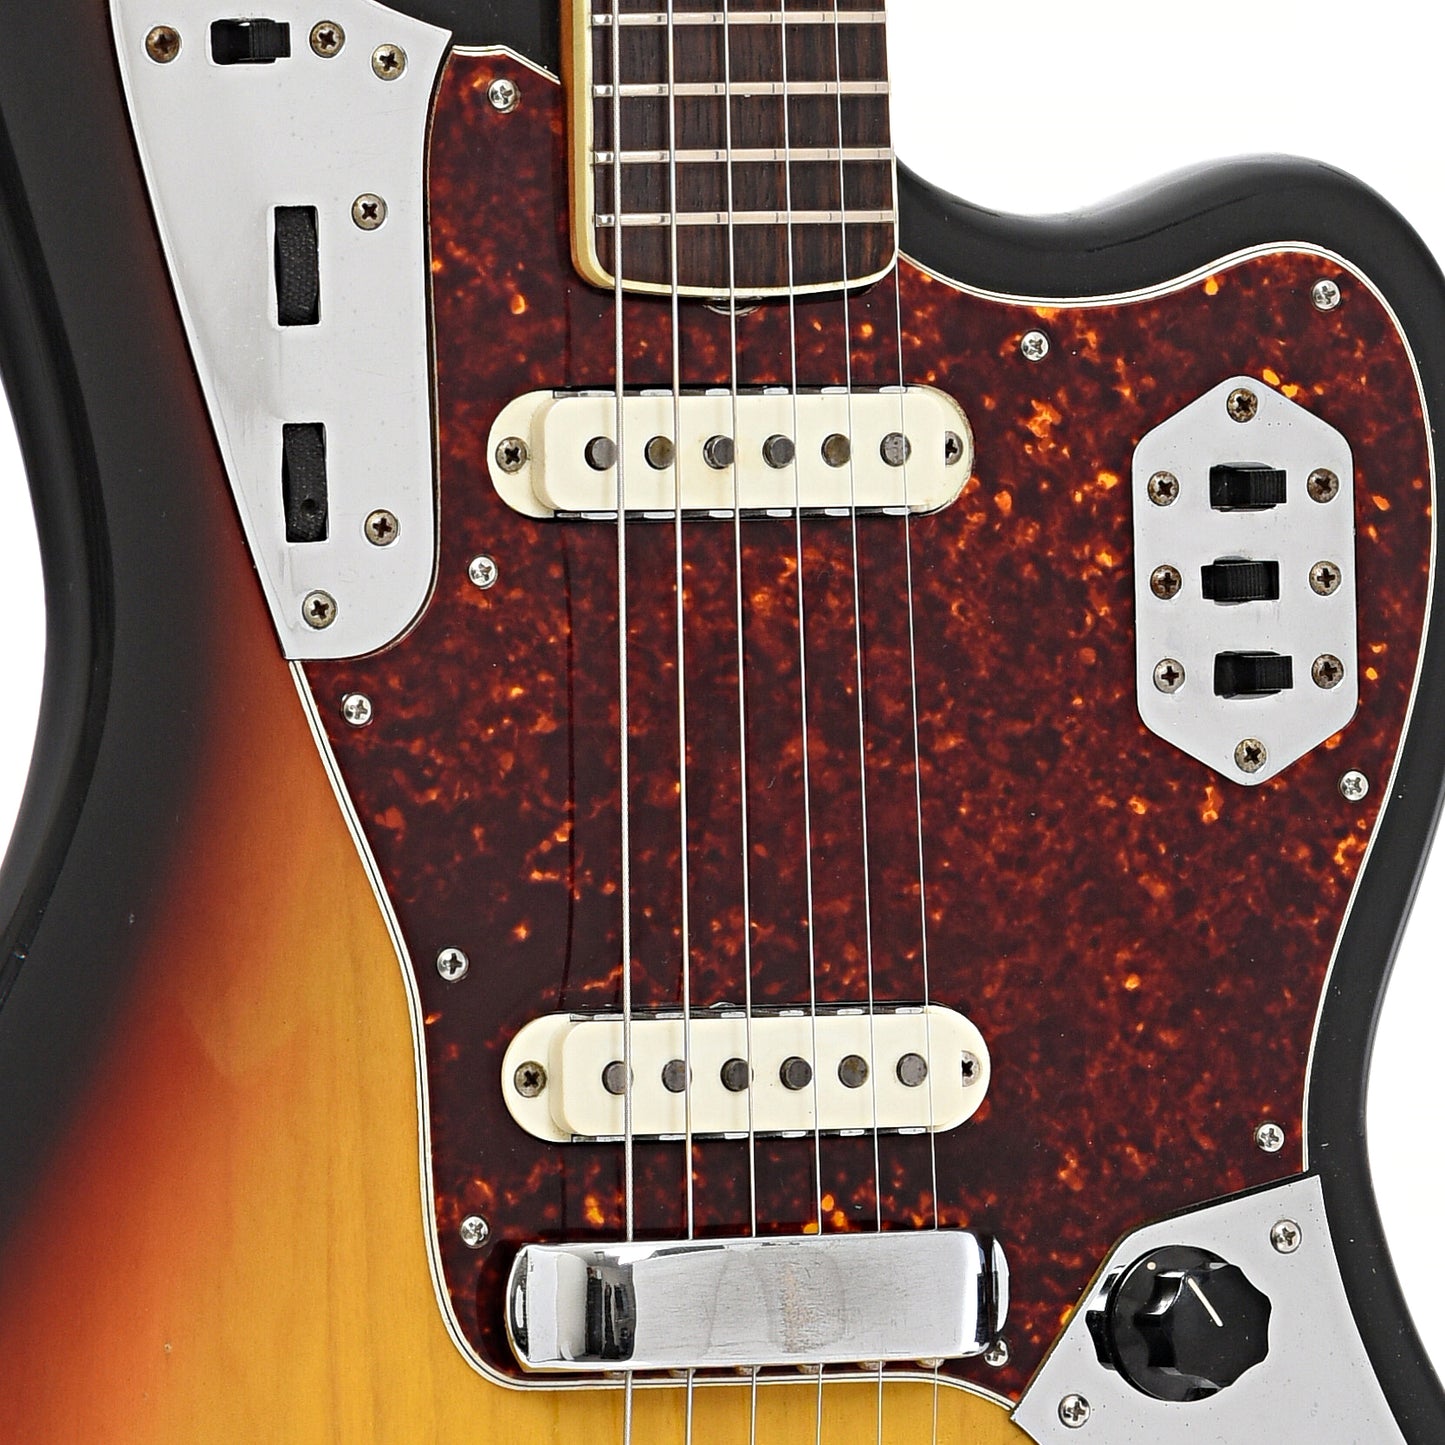 Pickups of Fender Jaguar Electric Guitar (1967)